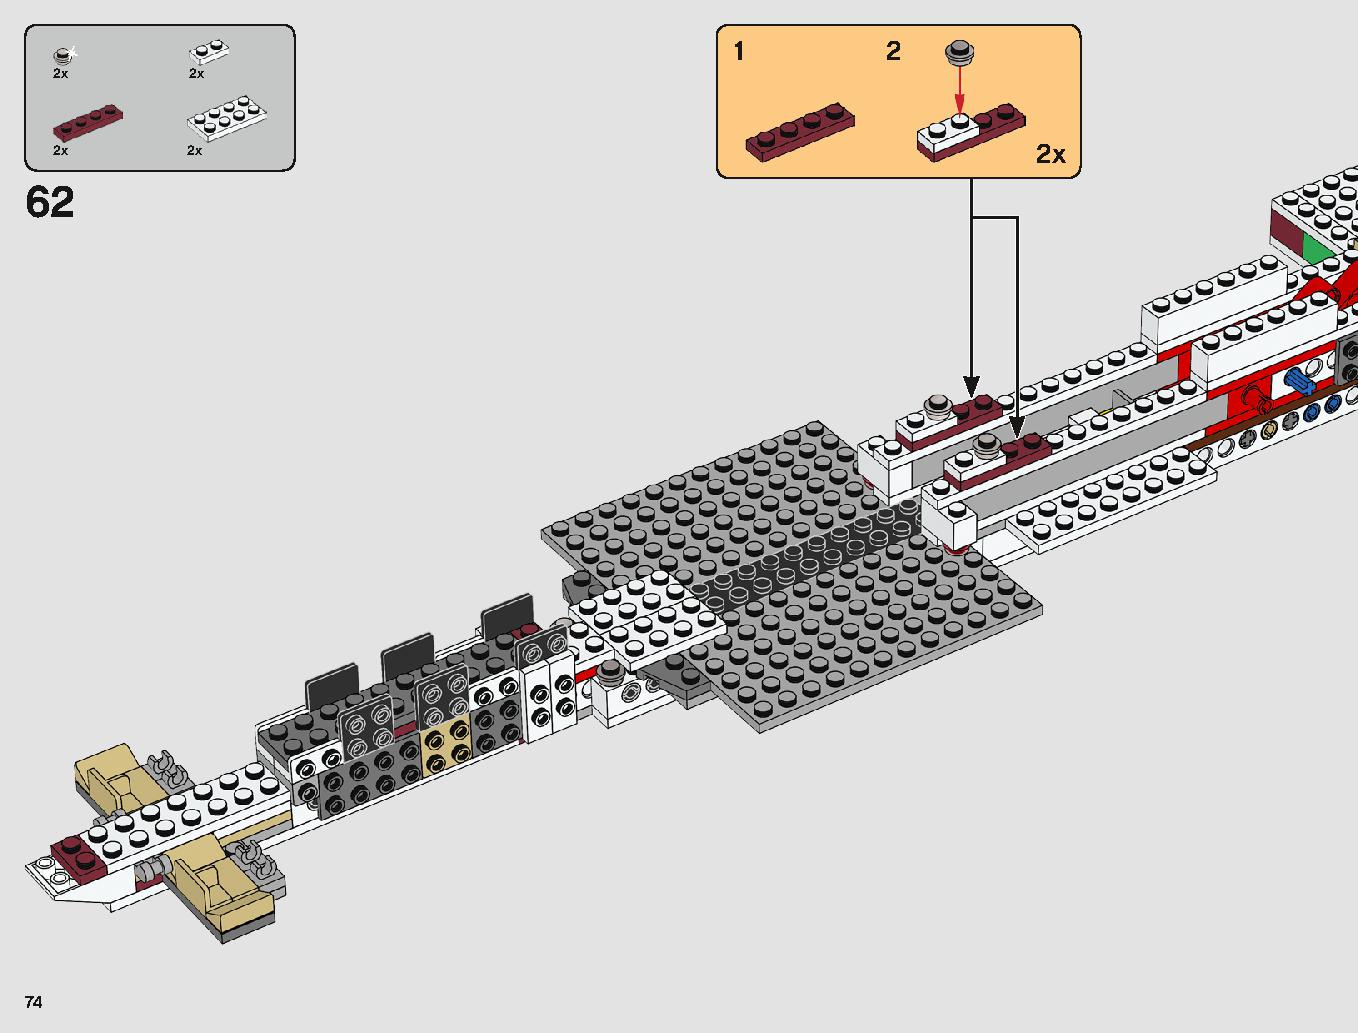 タンティブIV™ 75244 レゴの商品情報 レゴの説明書・組立方法 74 page